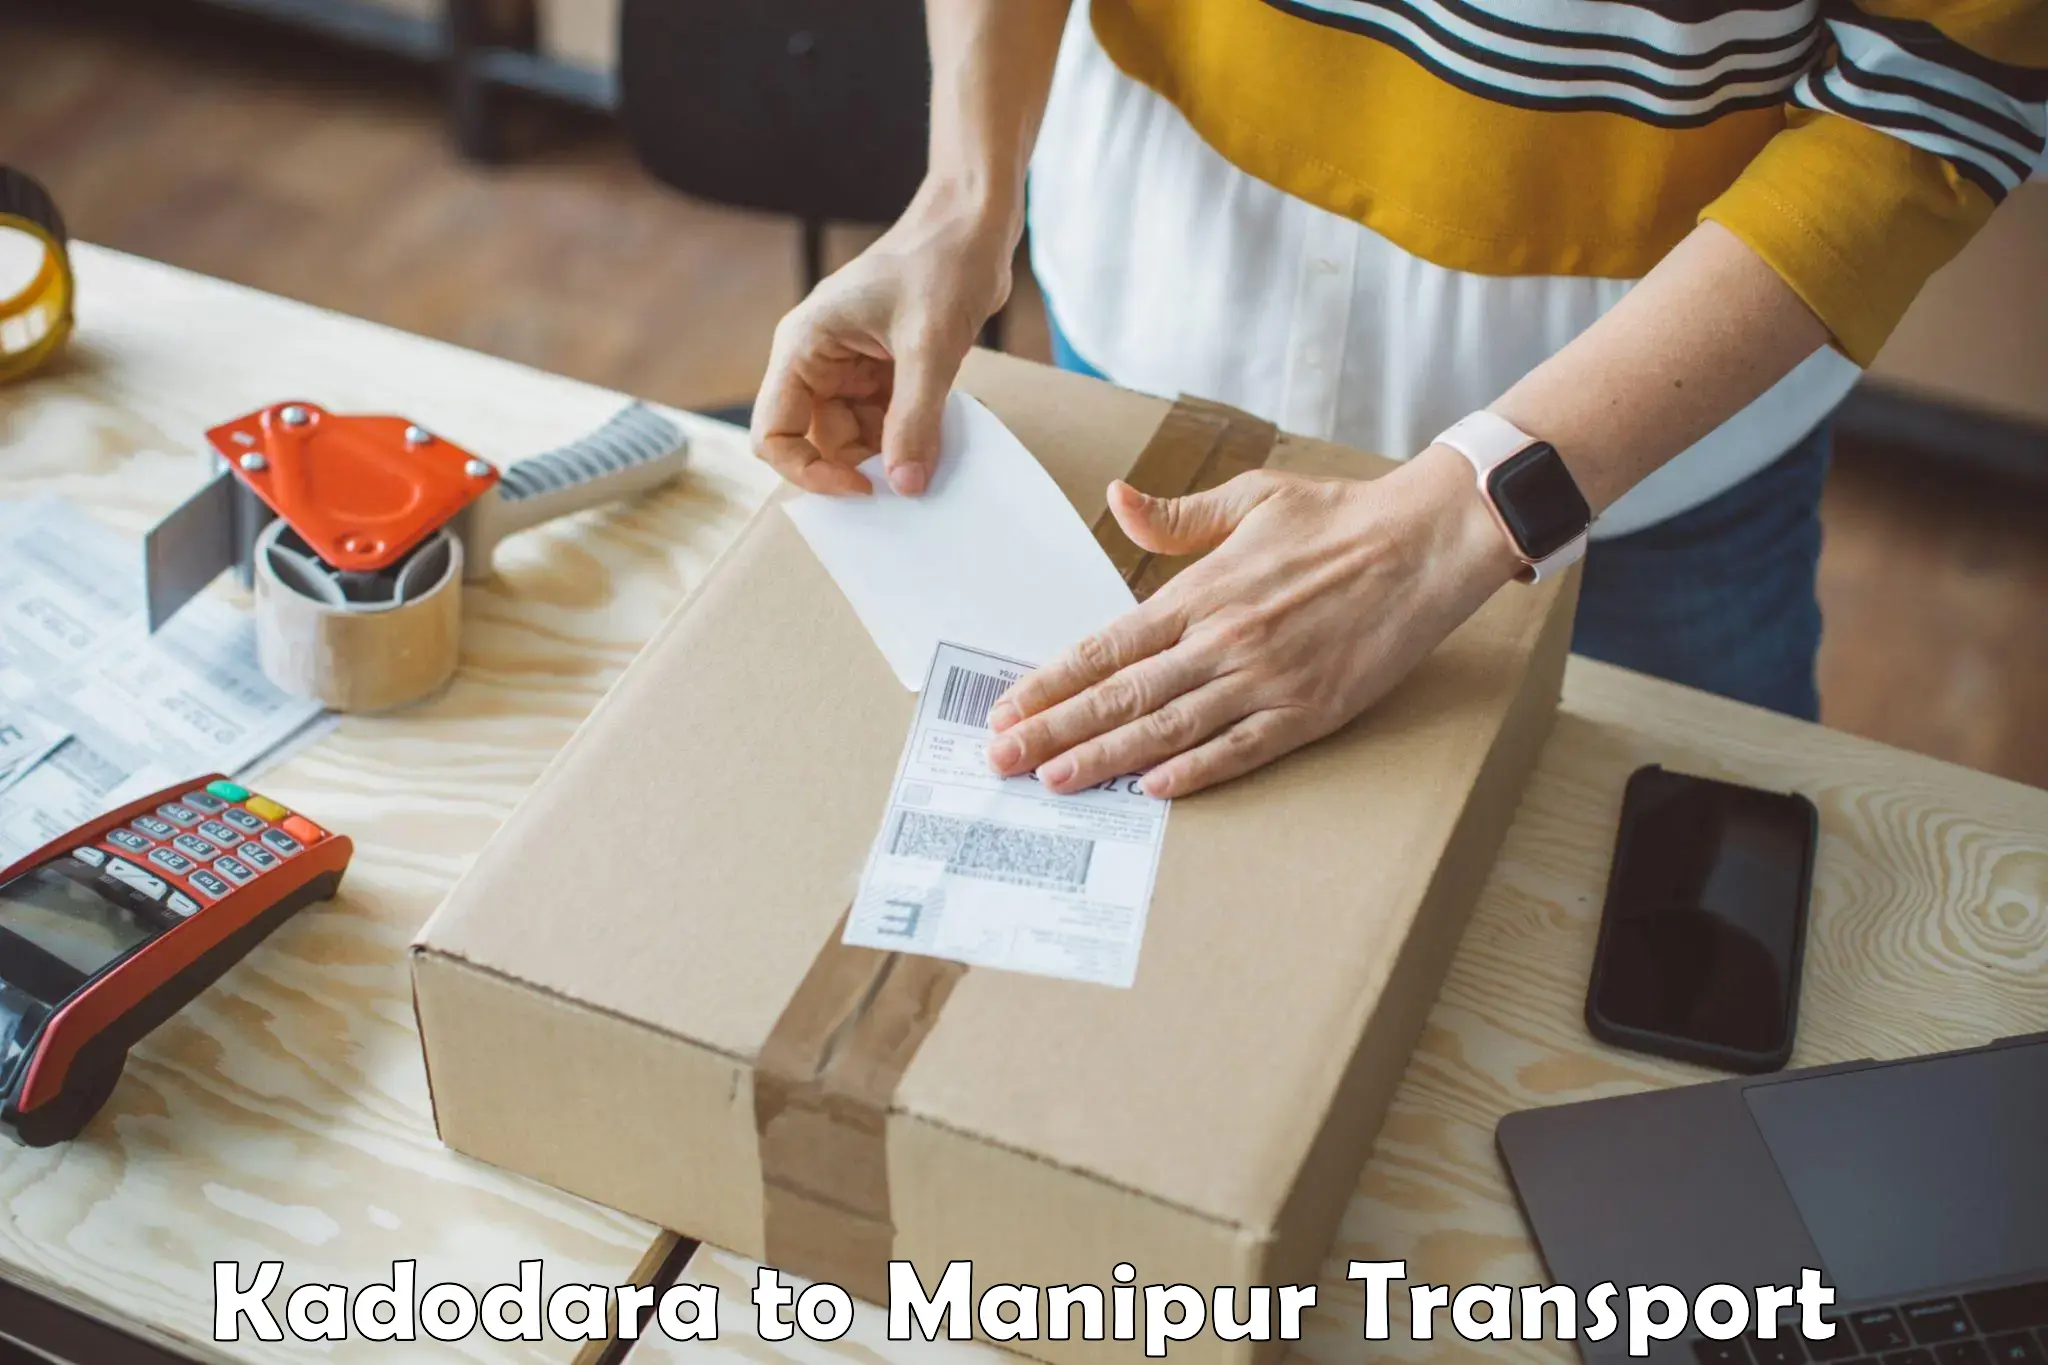 Furniture transport service in Kadodara to NIT Manipur